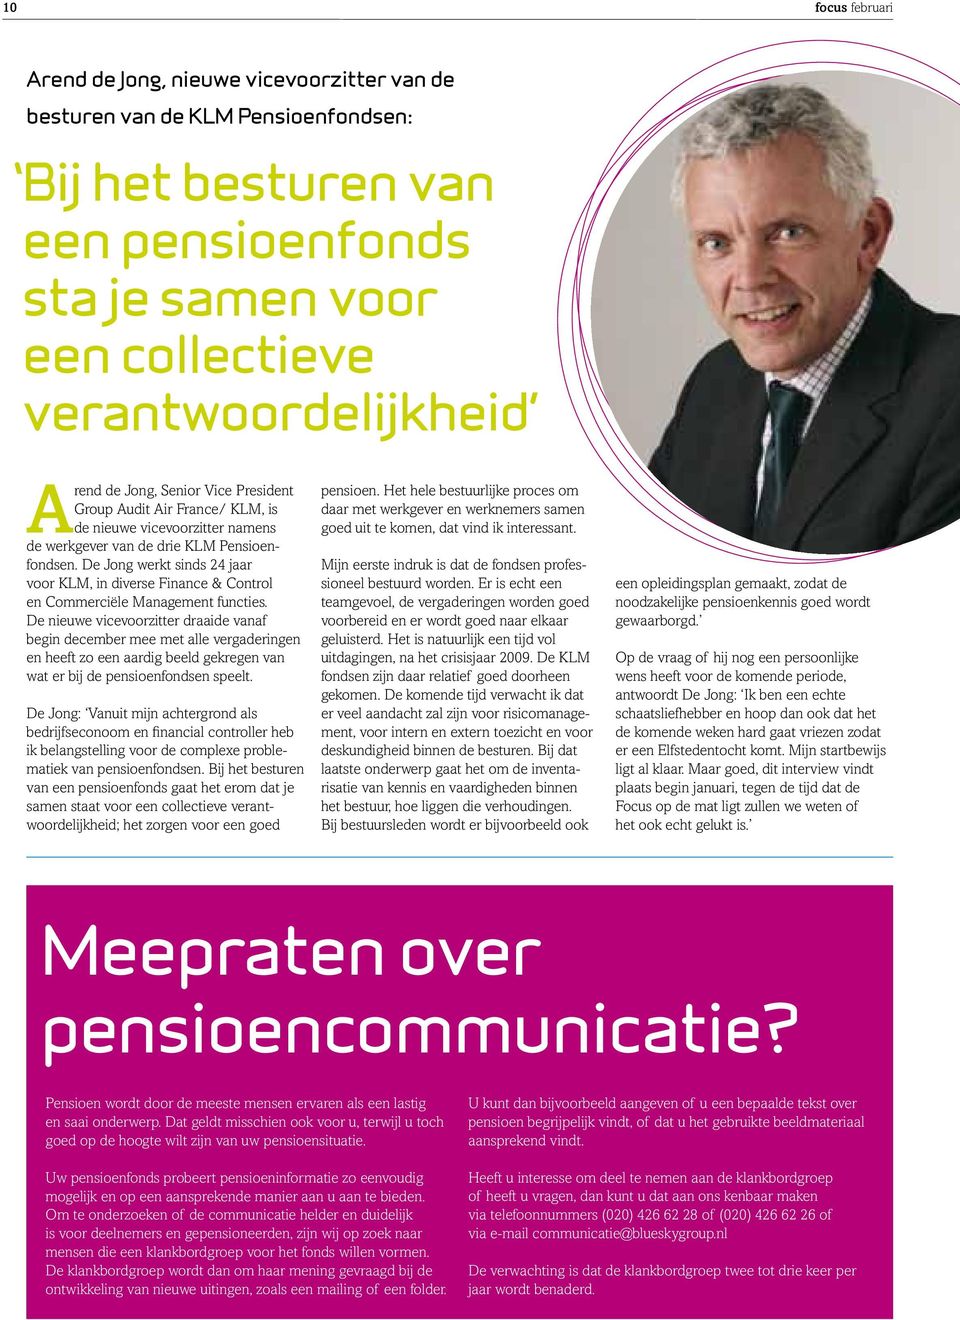 De Jong werkt sinds 24 jaar voor KLM, in diverse Finance & Control en Commerciële Management functies.